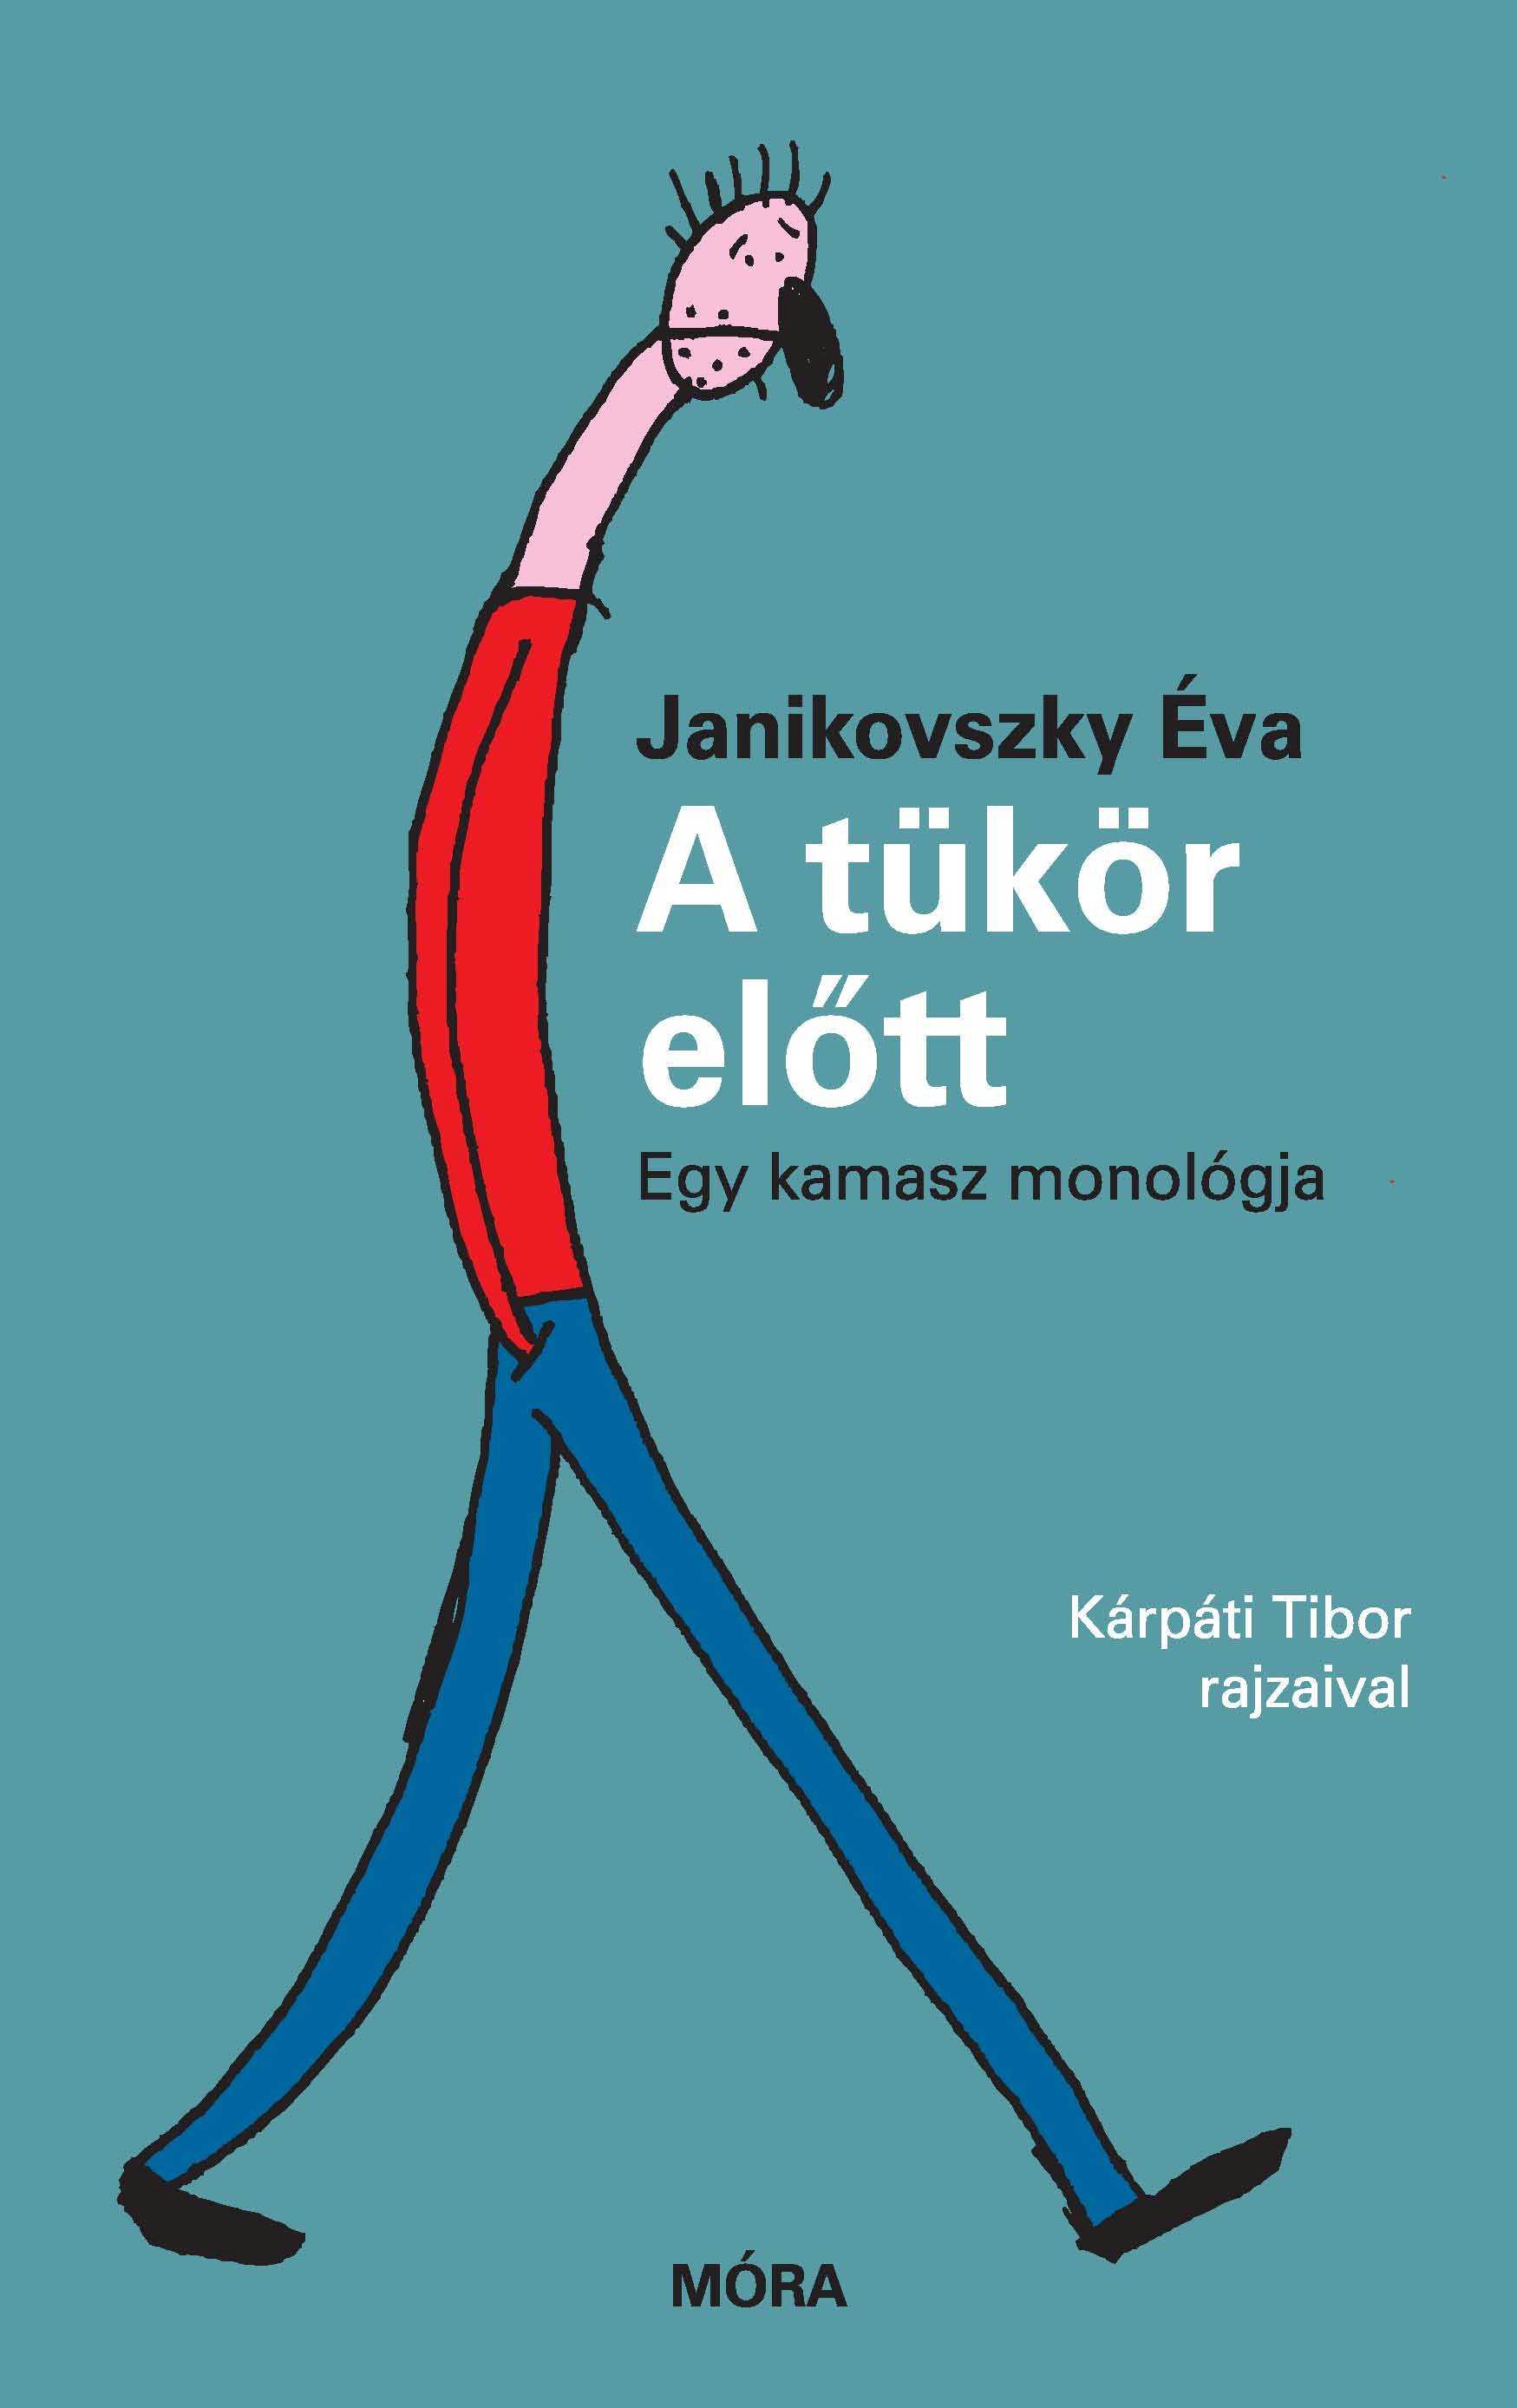 Janikovszky Éva - A tükör előtt - egy kamasz monológja